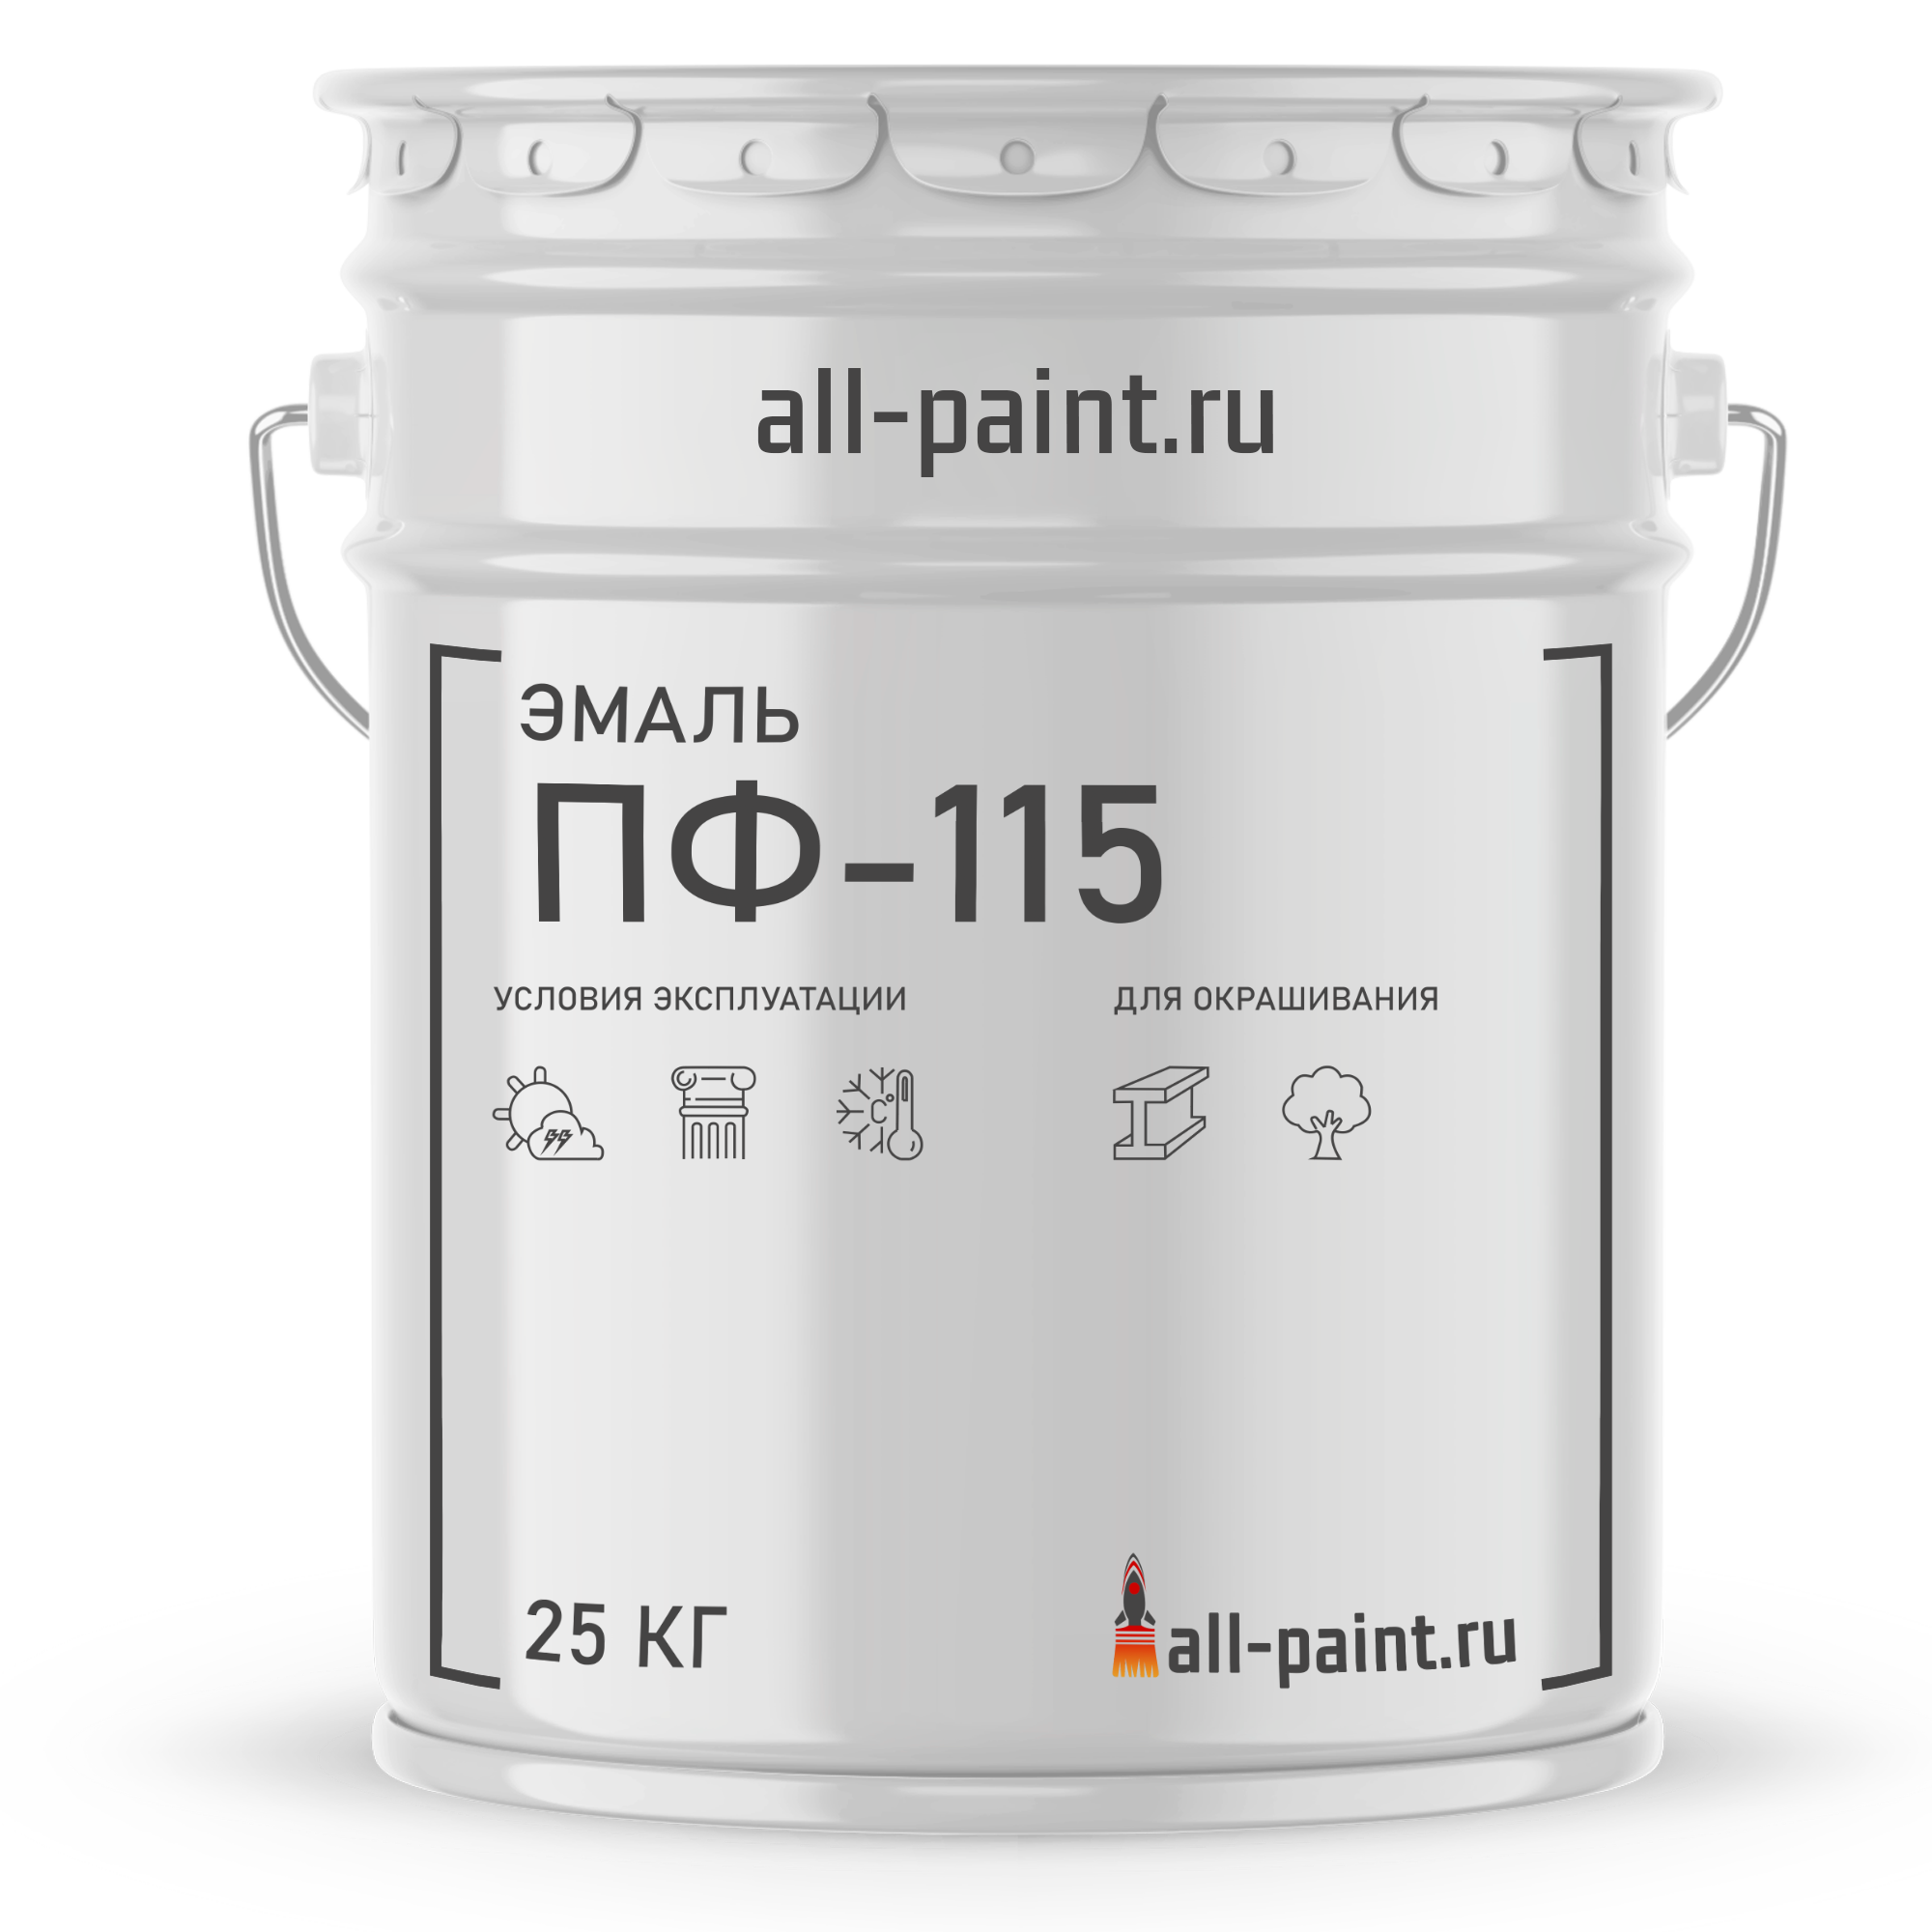  ПФ 115 -  краску ПентаФталевую алкидную эмаль ПФ-115 по .